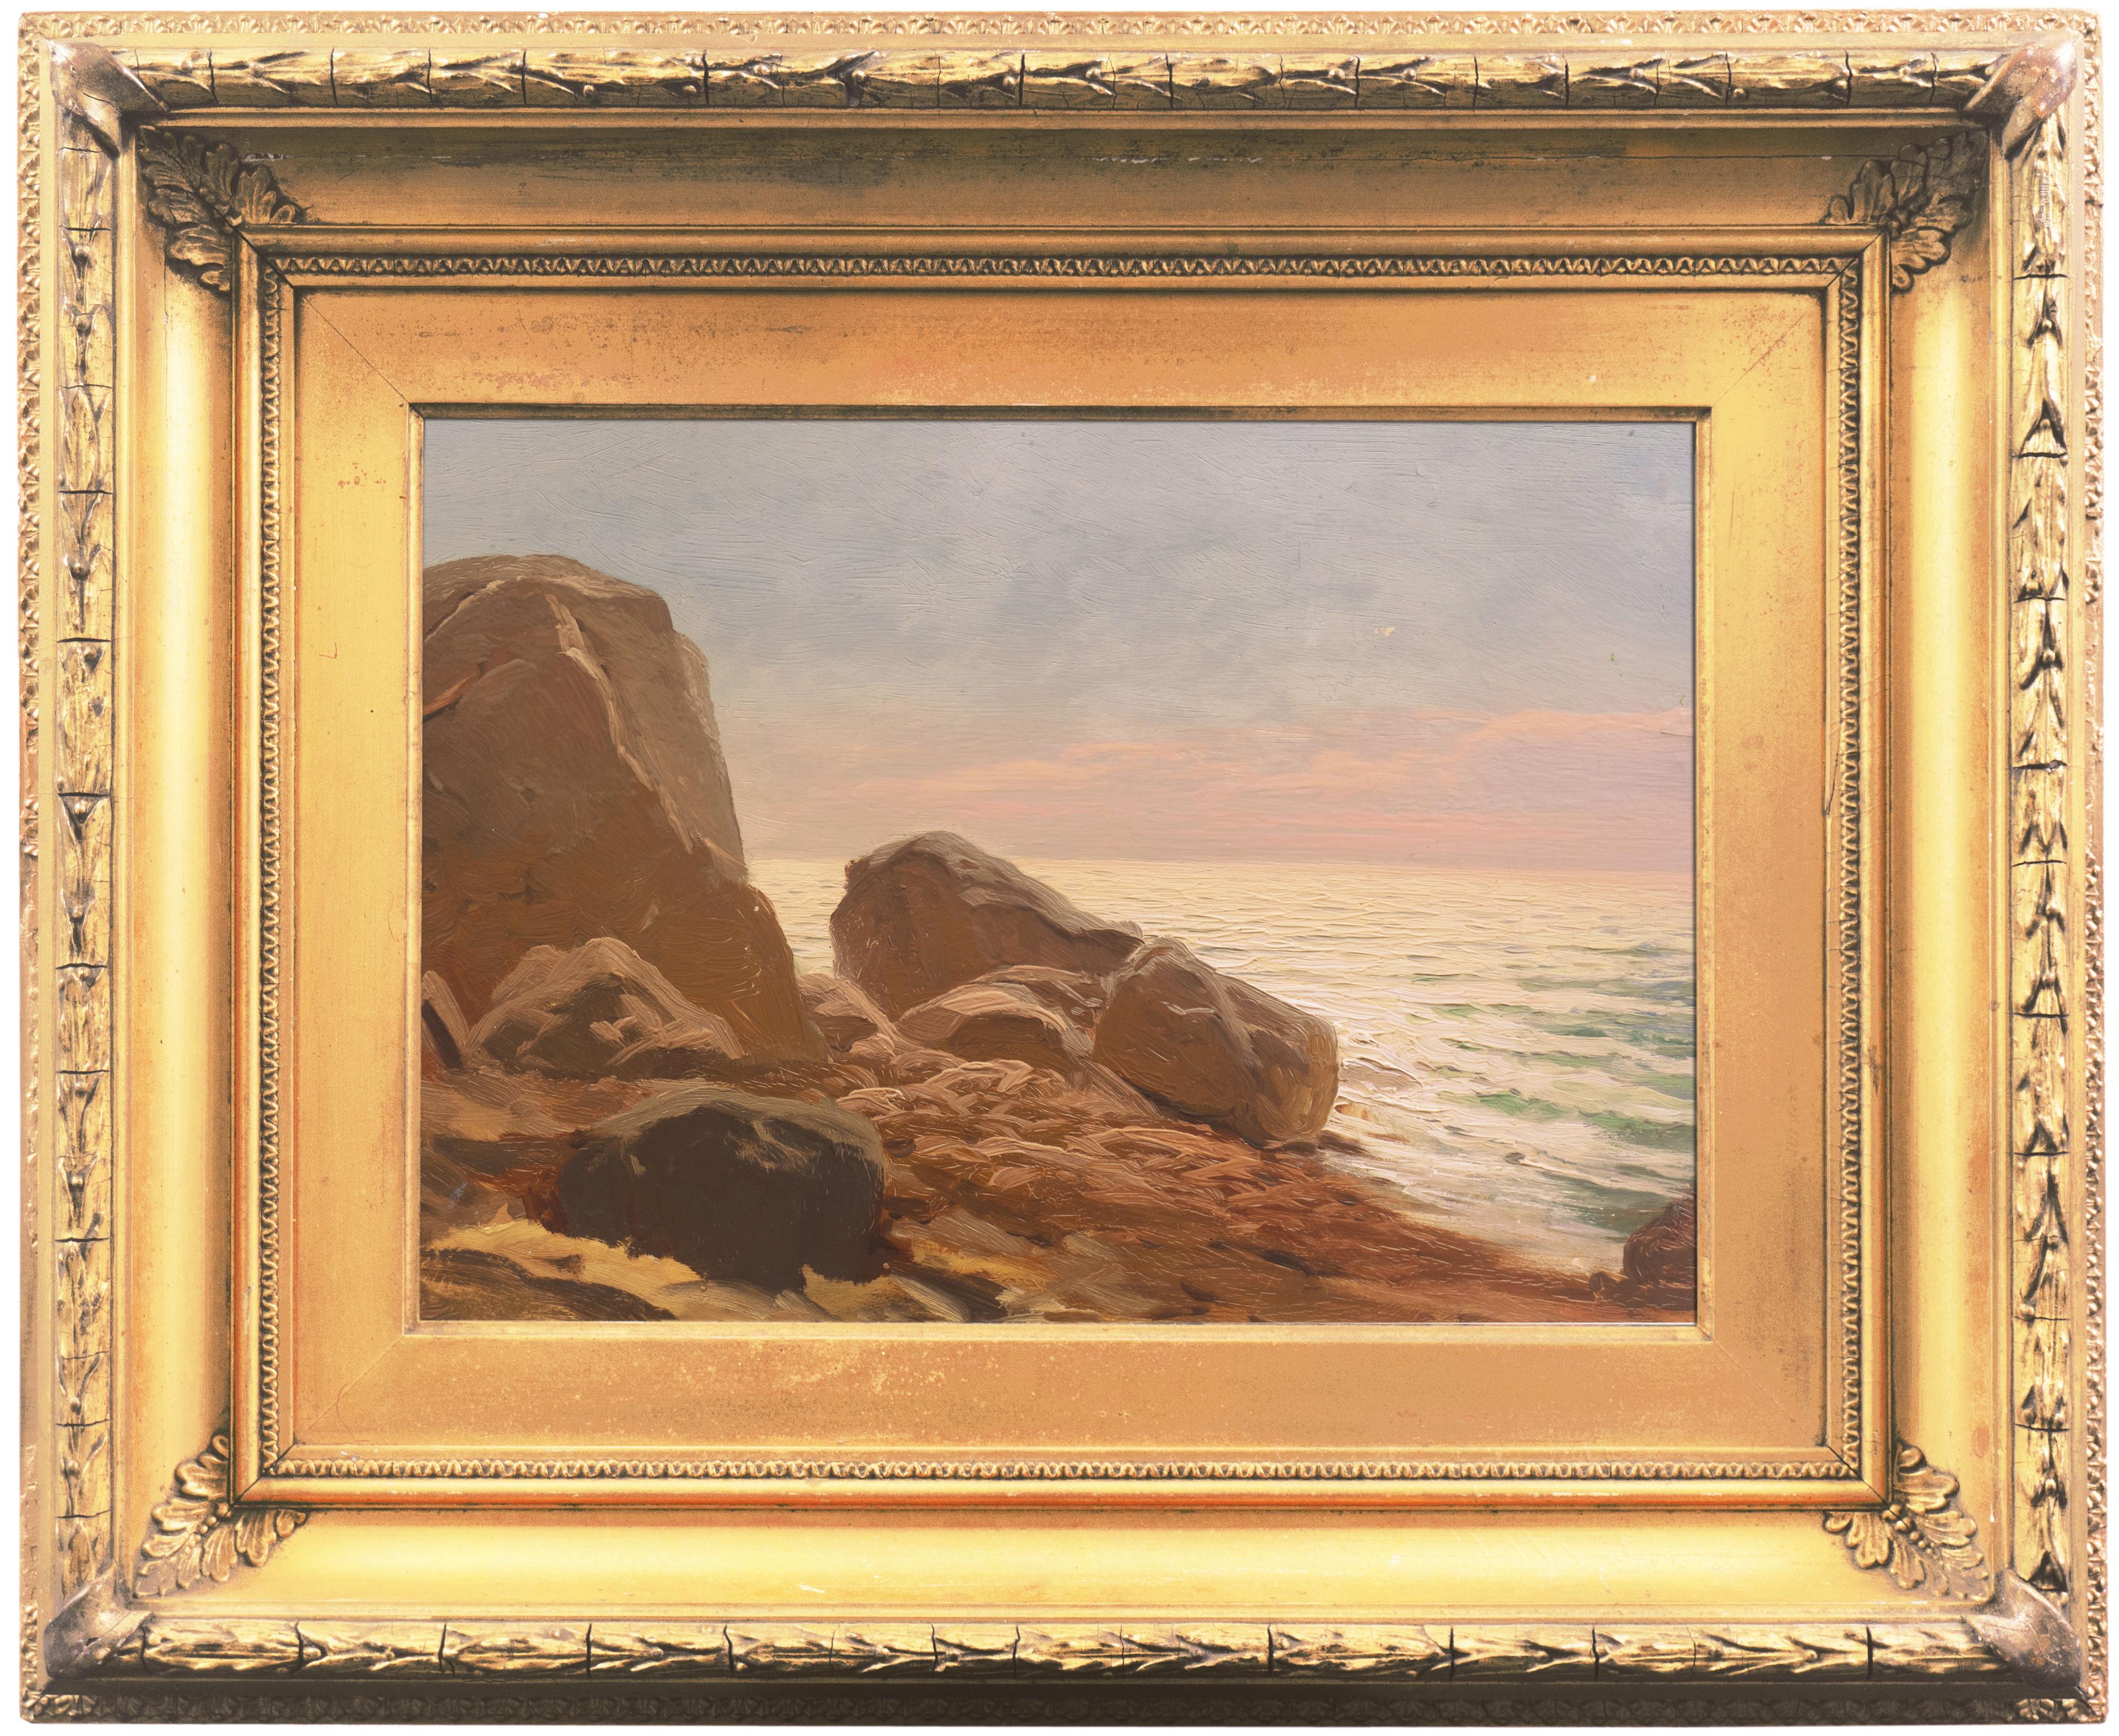 Landscape Painting American School - 'Evening Light, Rocky Shore', paysage marin impressionniste de l'école américaine, Pacifique 